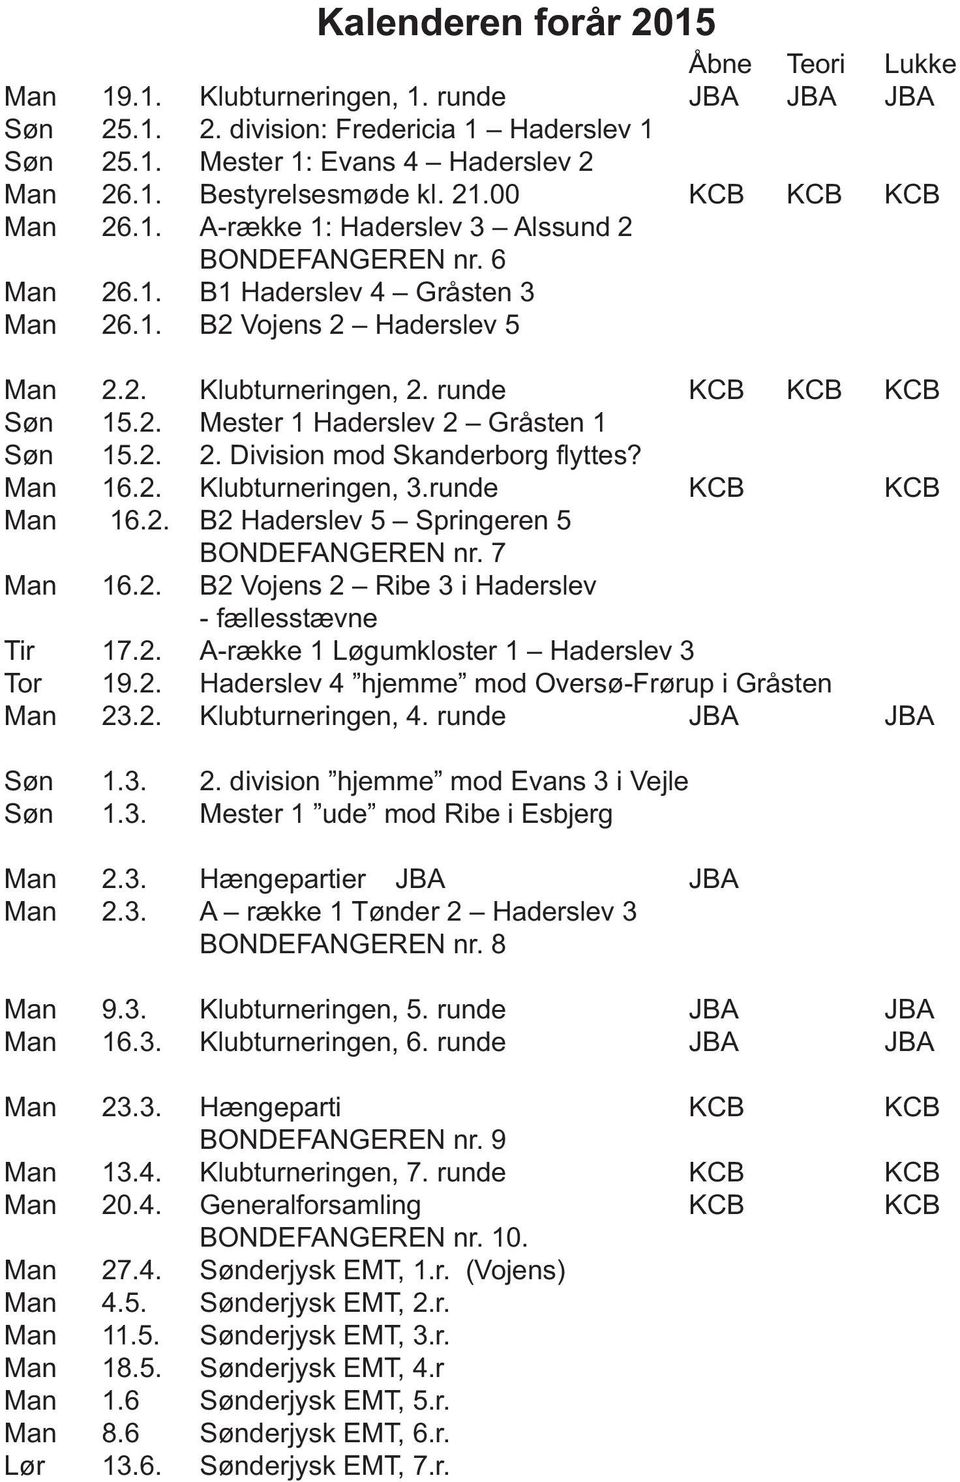 runde KCB KCB KCB Søn 15.2. Mester 1 Haderslev 2 Gråsten 1 Søn 15.2. 2. Division mod Skanderborg flyttes? Man 16.2. Klubturneringen, 3.runde KCB KCB Man 16.2. B2 Haderslev 5 Springeren 5 BONDEFANGEREN nr.